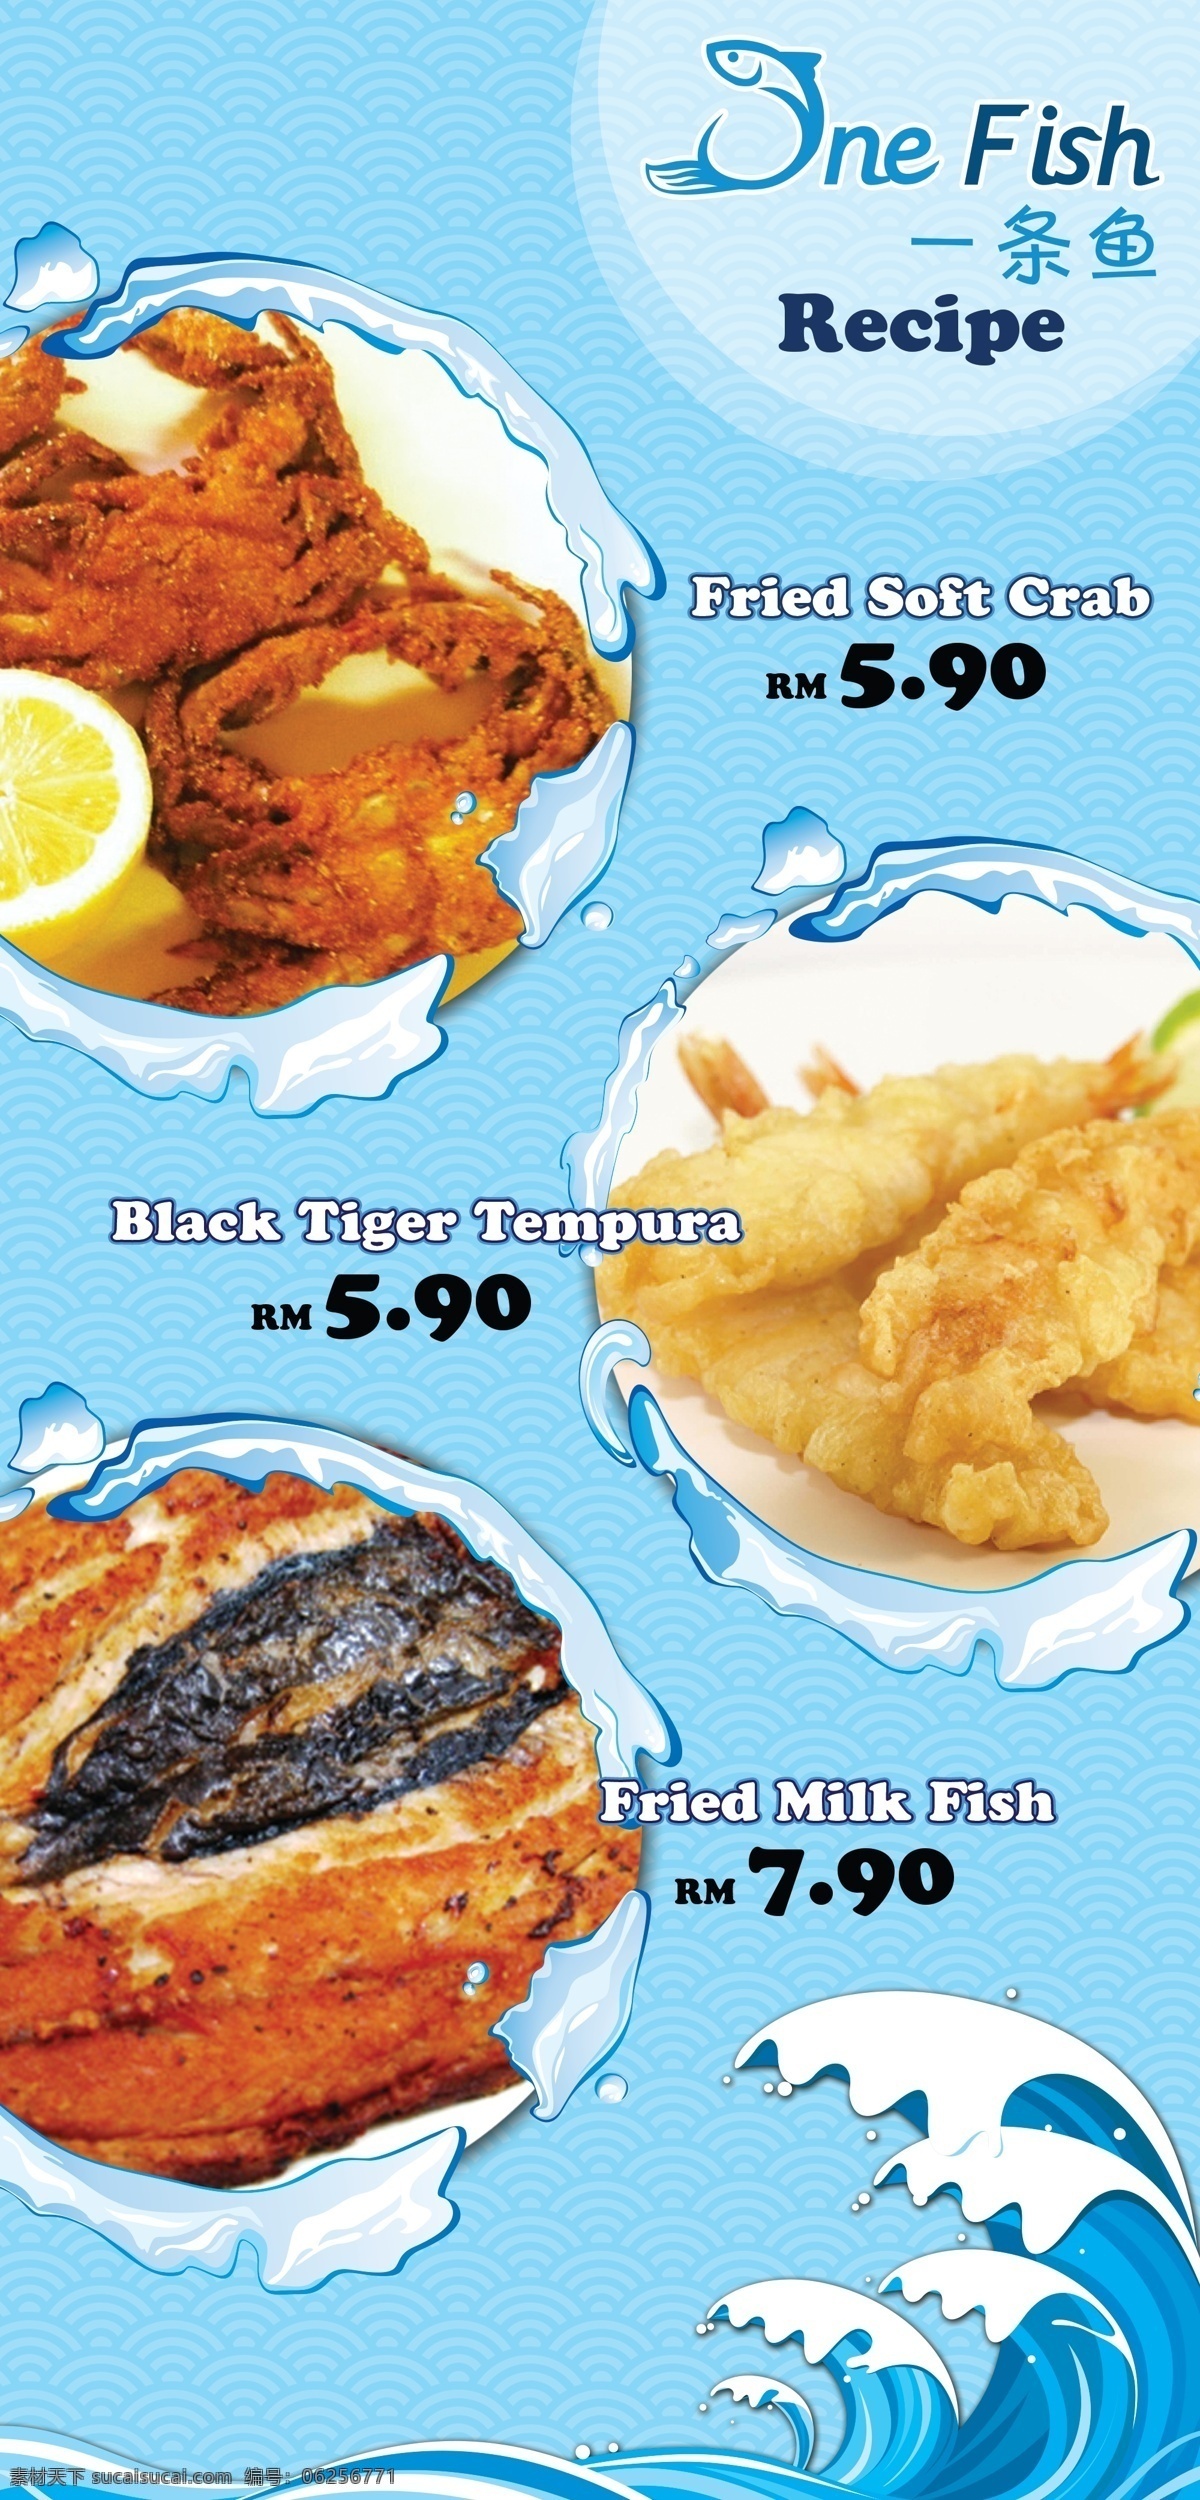 条 鱼 食物 海鲜 菜单 青色 天蓝色